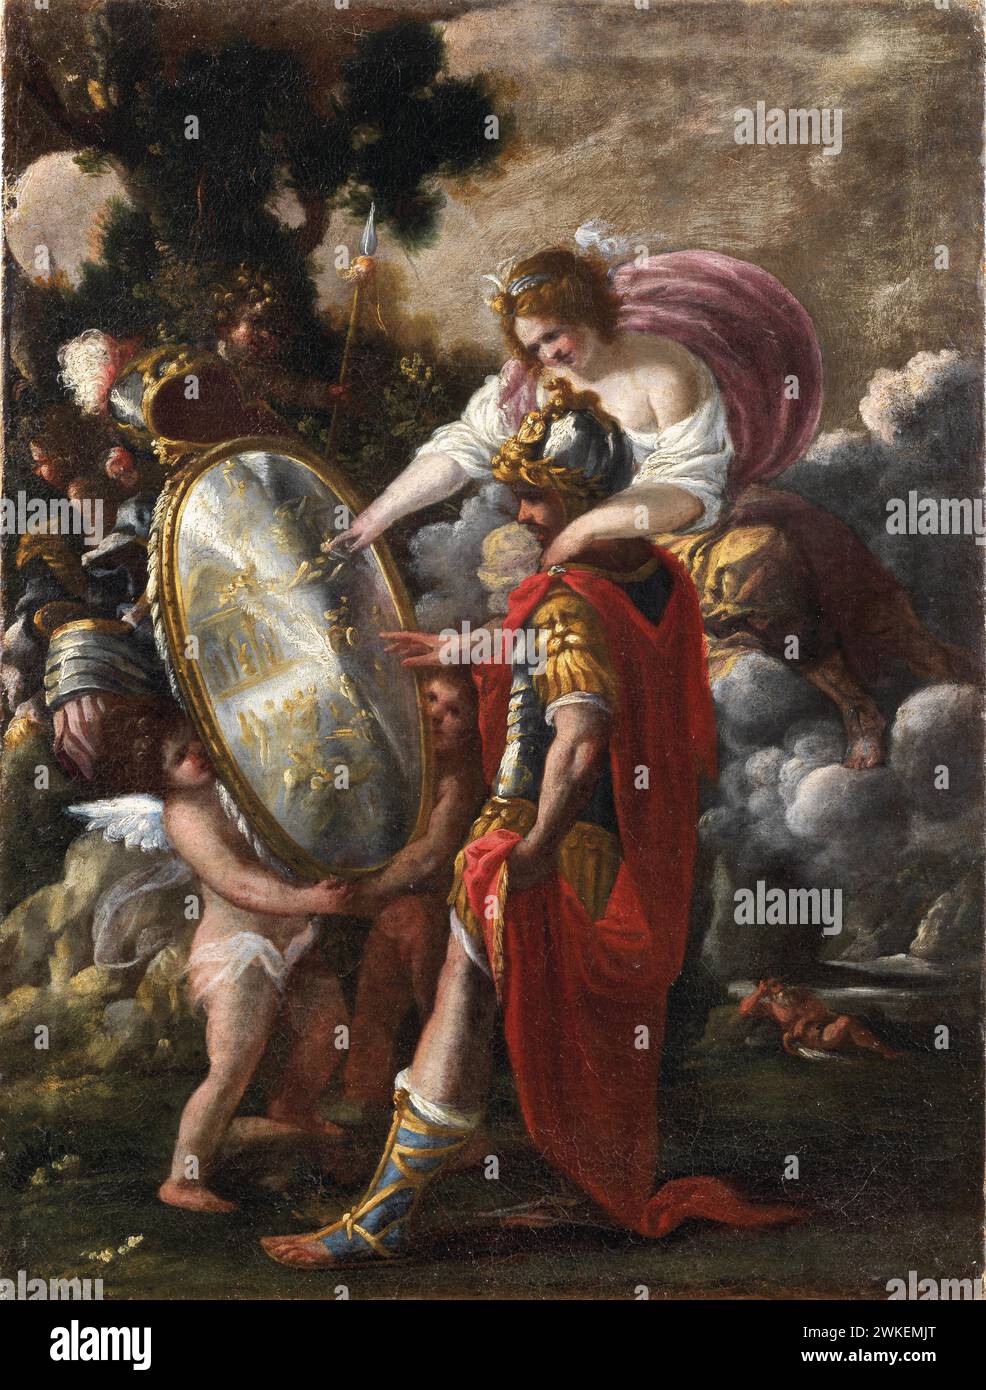 Thetis überreicht dem Achilles den Schild. Museum: Privatsammlung. Author: Giuseppe Passeri. Stock Photo